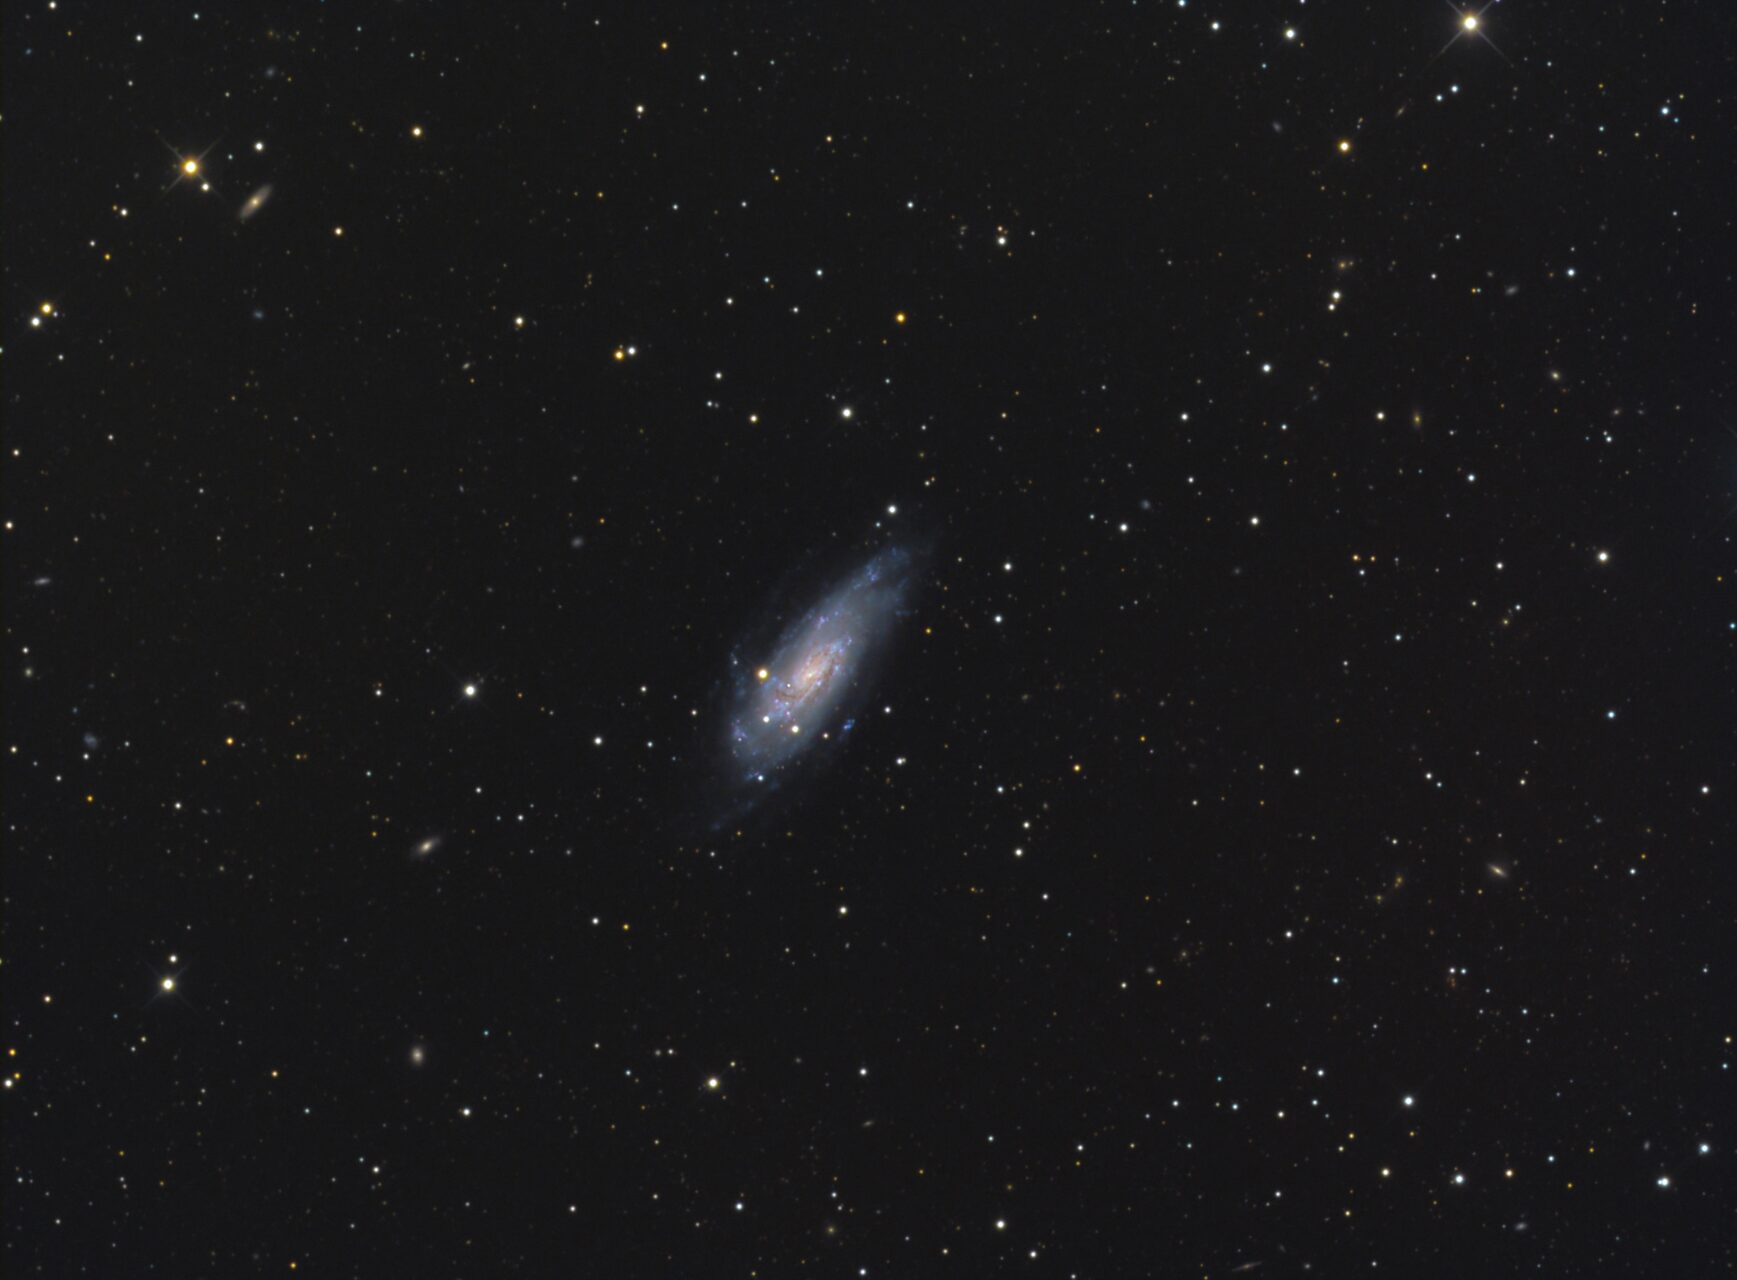 NGC 4559